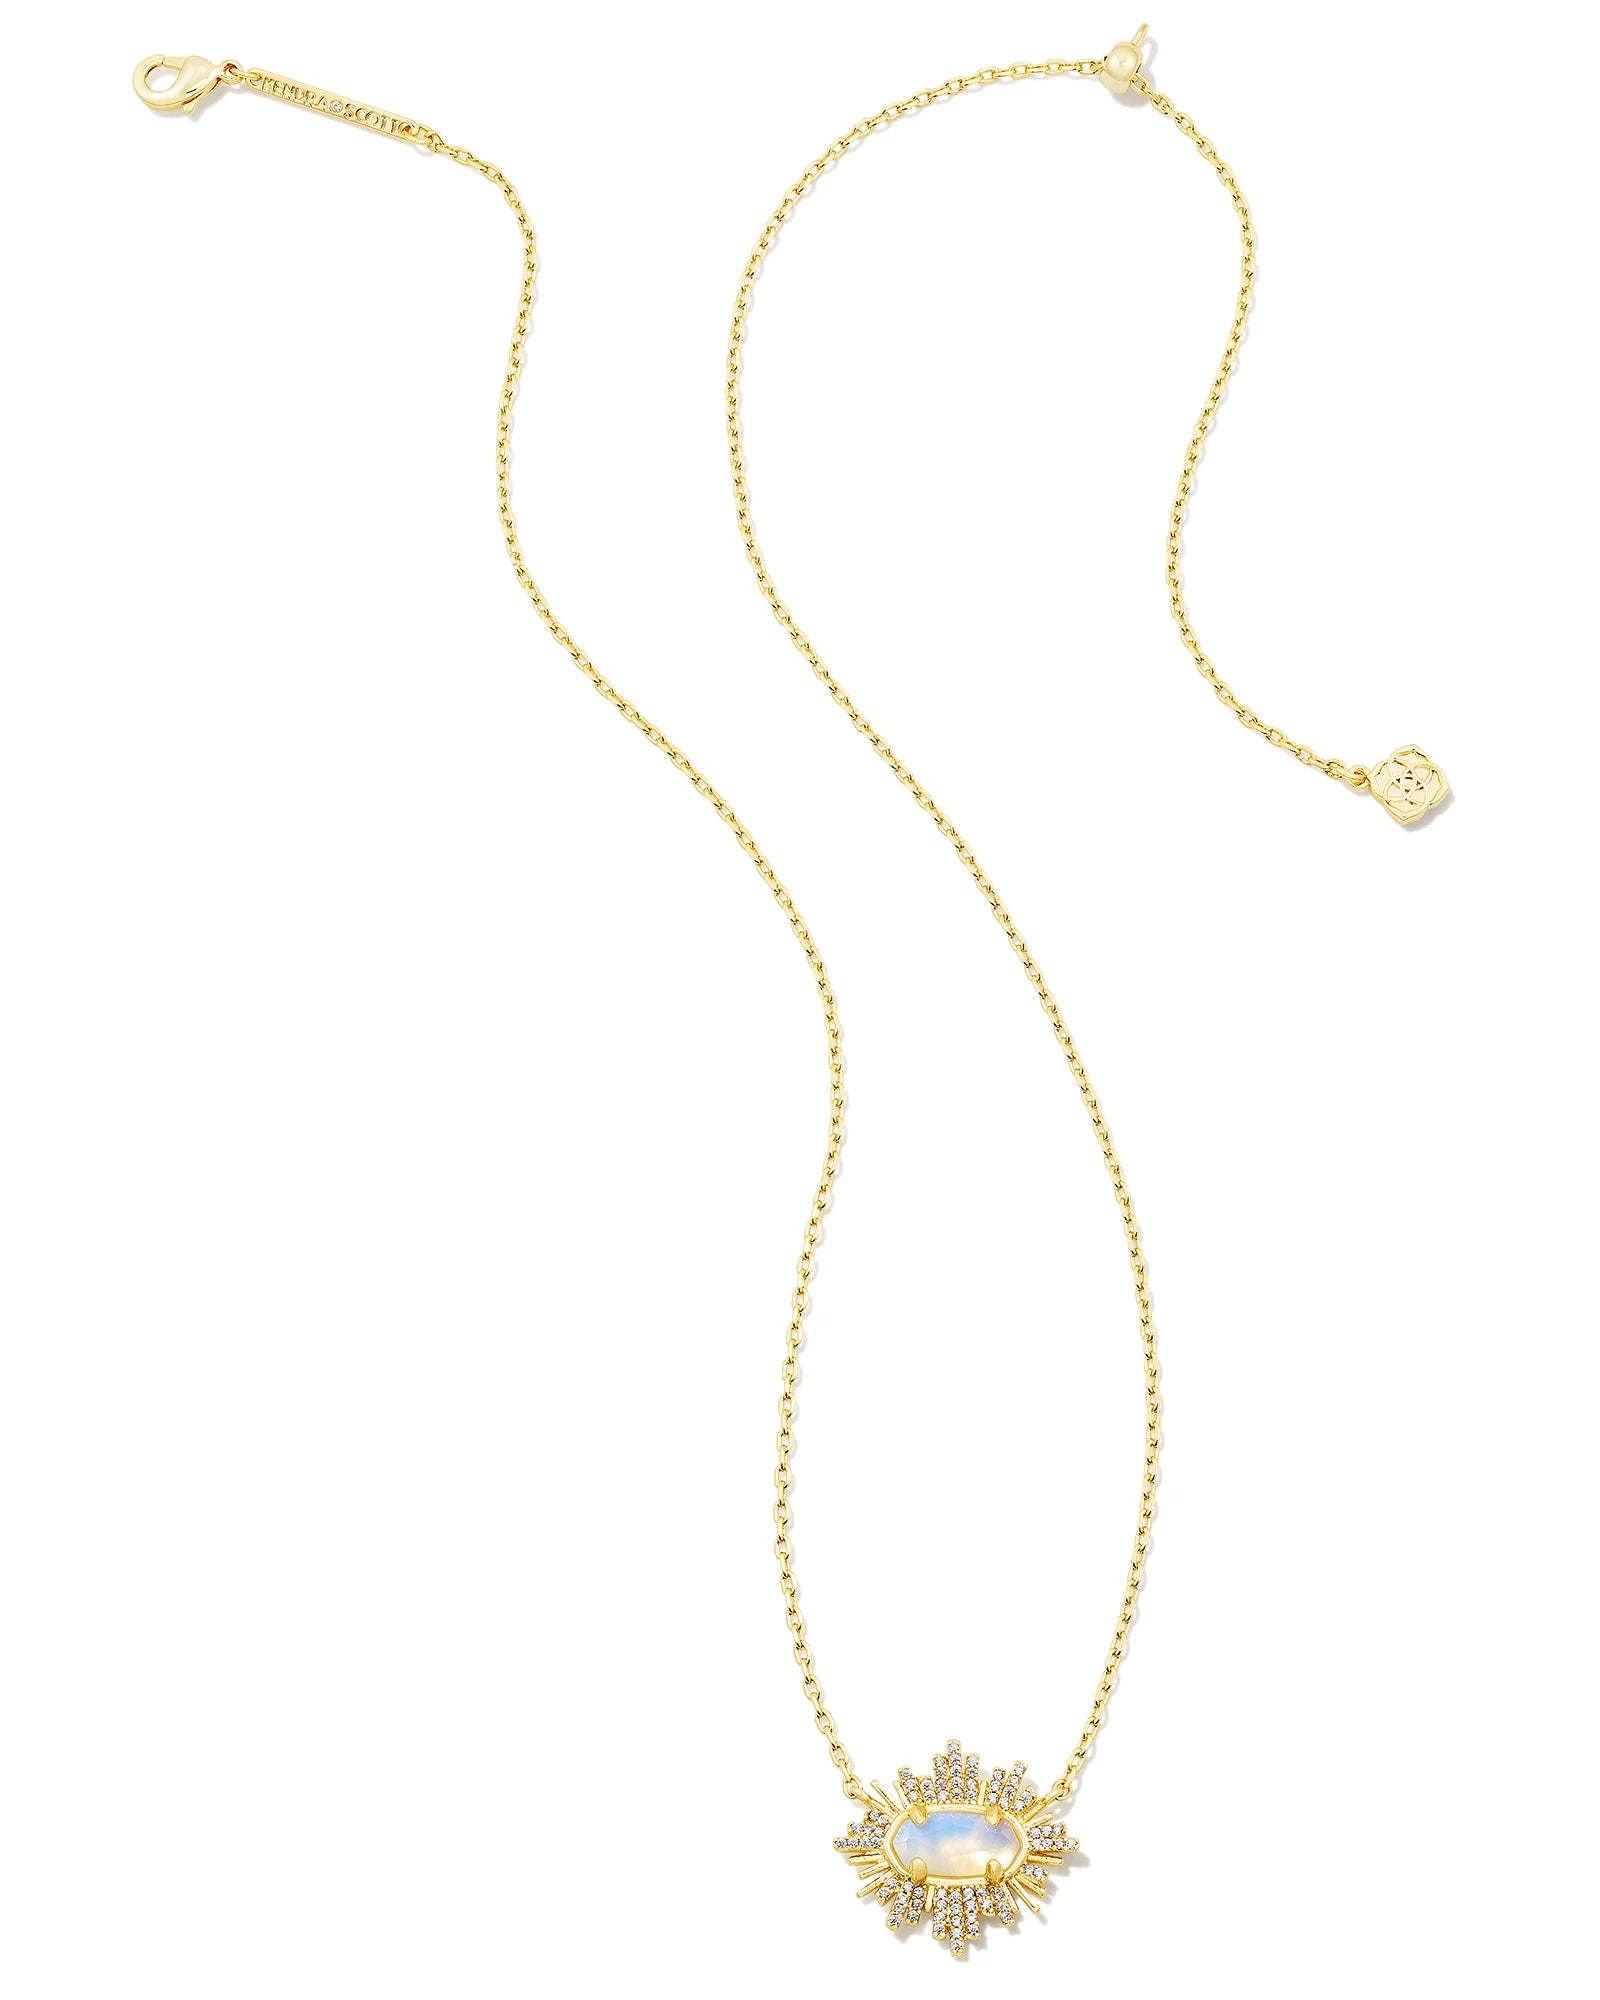 Spiral Iridescent Pendant Necklace on Adjustable Natural Fiber